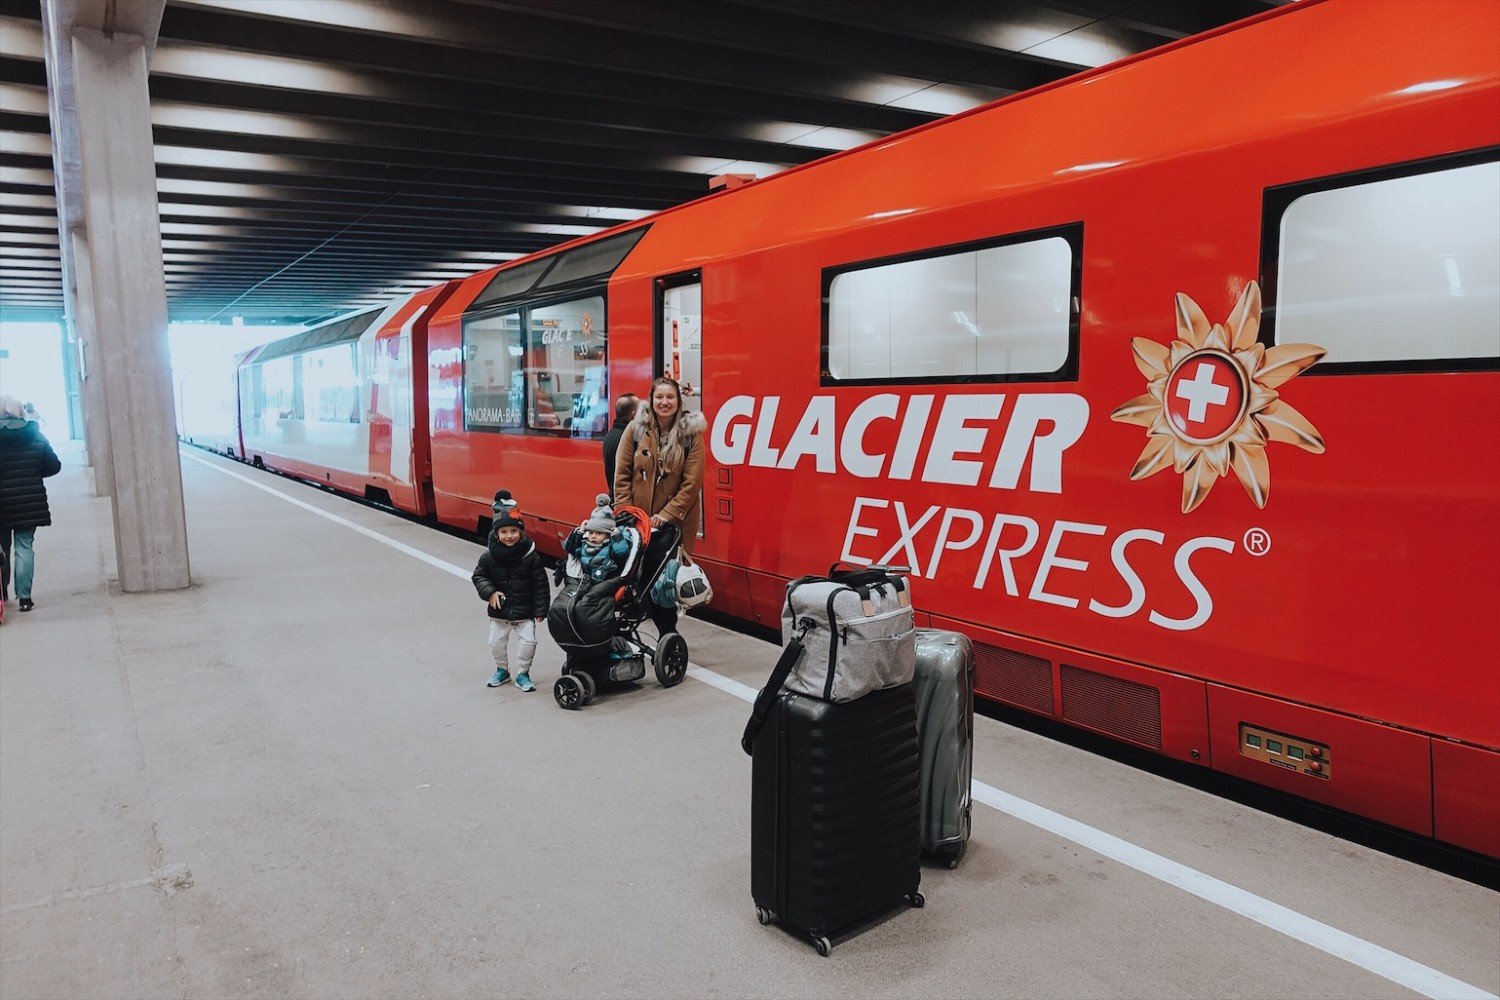 Glacier Express - O trem panorâmico mais famoso da Suíça 